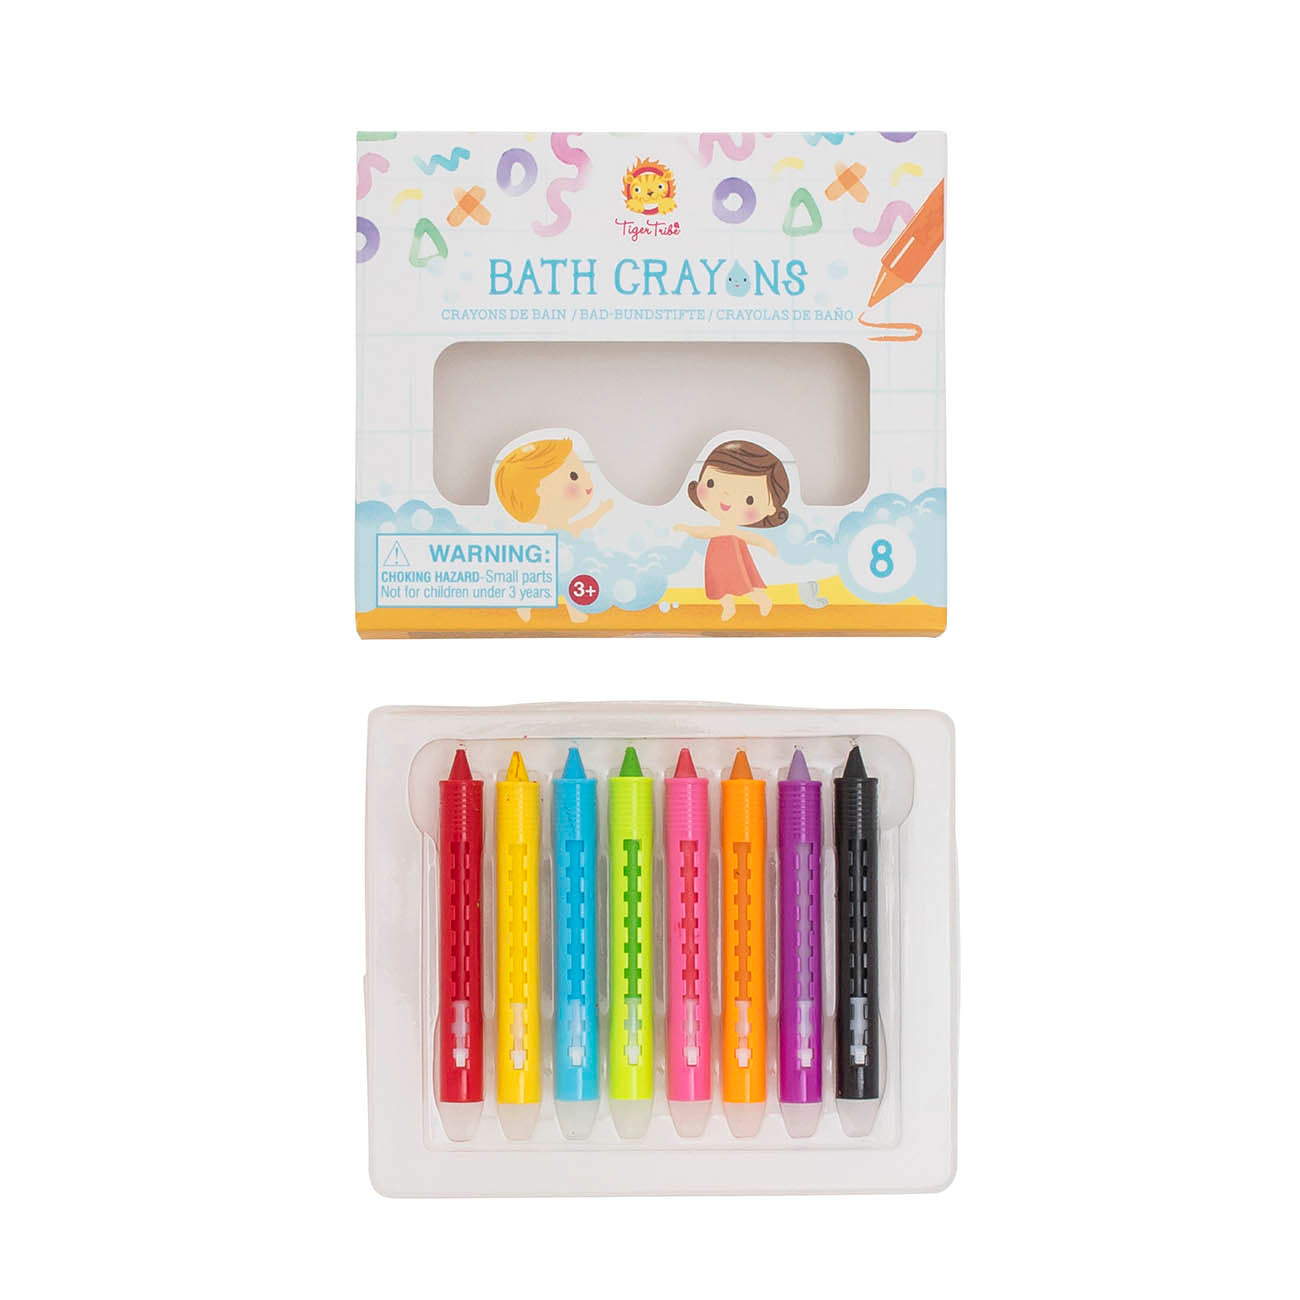 Bath Crayons Bath Toy Tiger Tribe 